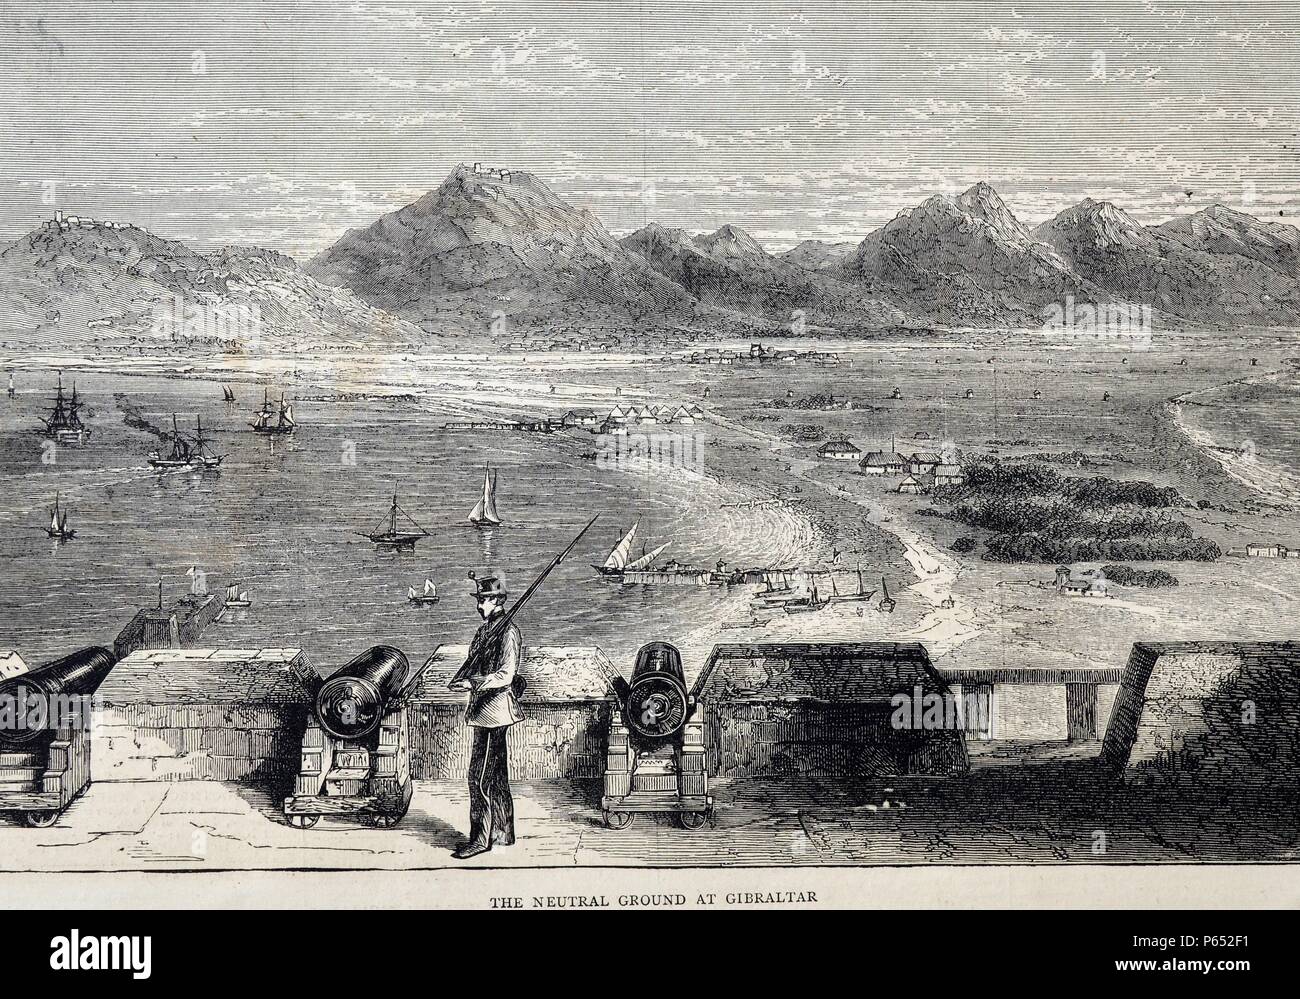 Incisione raffigura 'il terreno neutrale" a Gibilterra. Il terreno neutrale è stato stabilito a causa di controversie tra i britannici e spagnoli. Datata 1870 Foto Stock